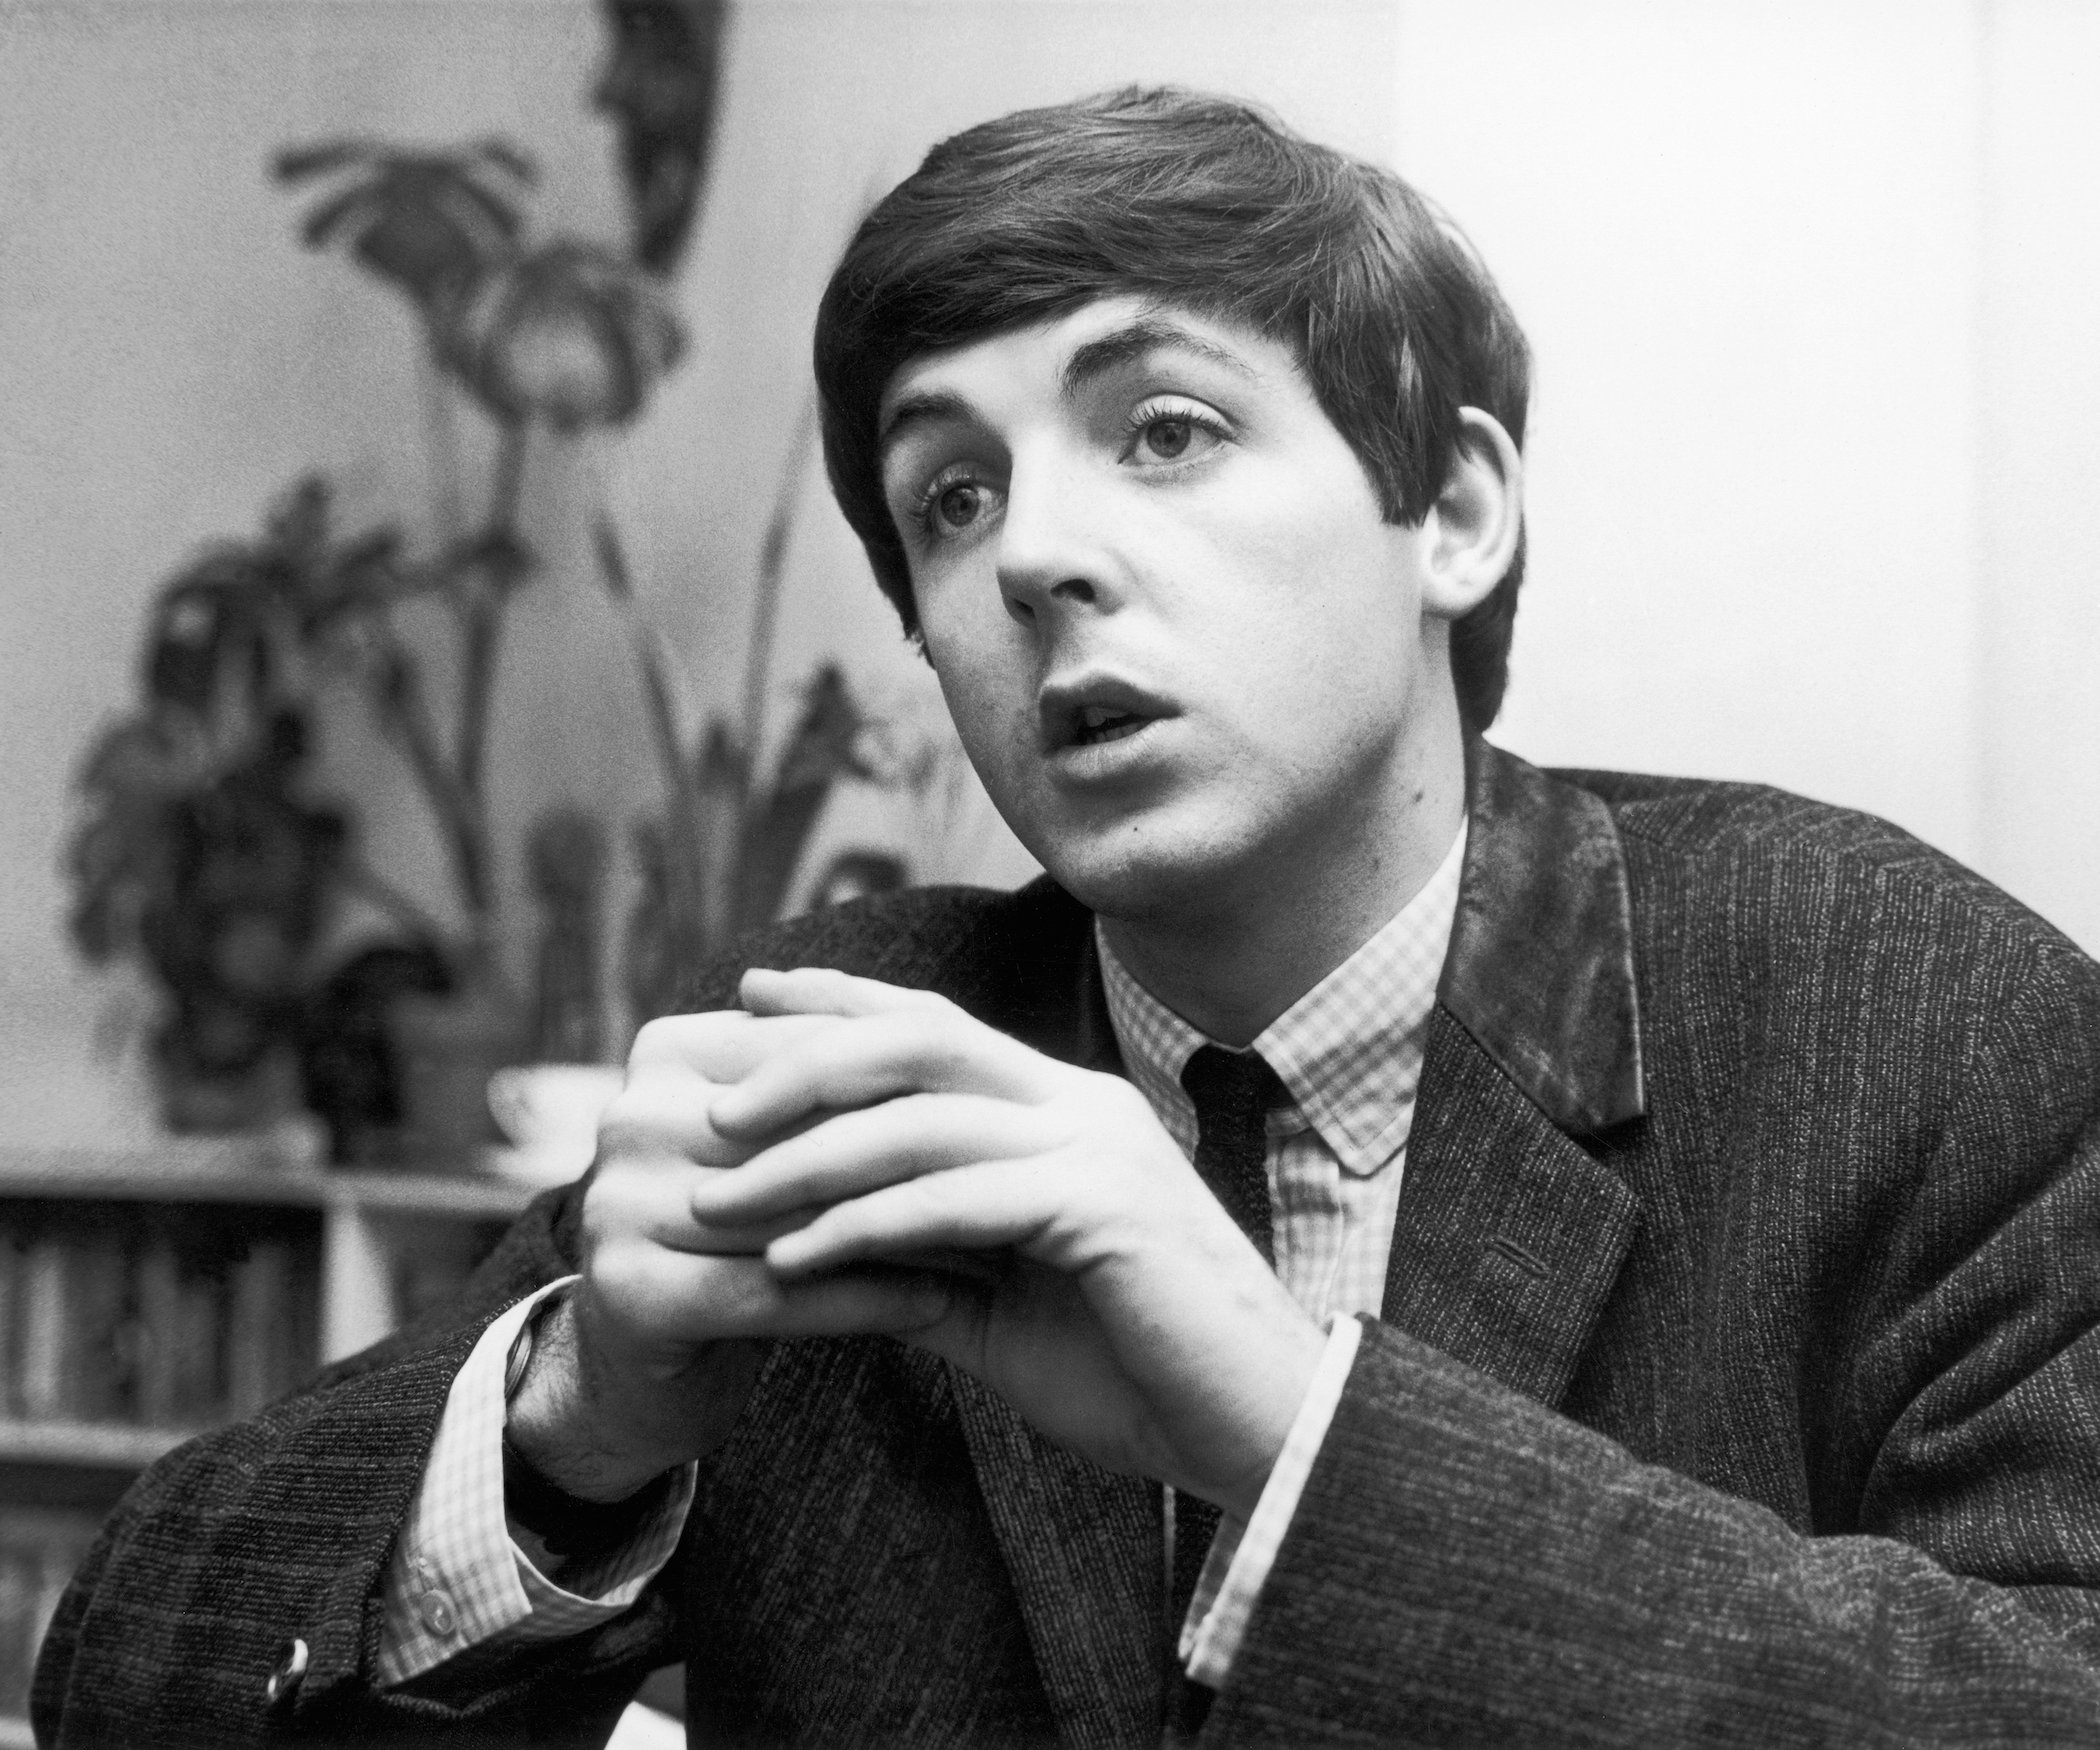 Paul McCartney, 9th September 1963. Donald Zec, Daily Mirror Journalist, interviews The Beatles